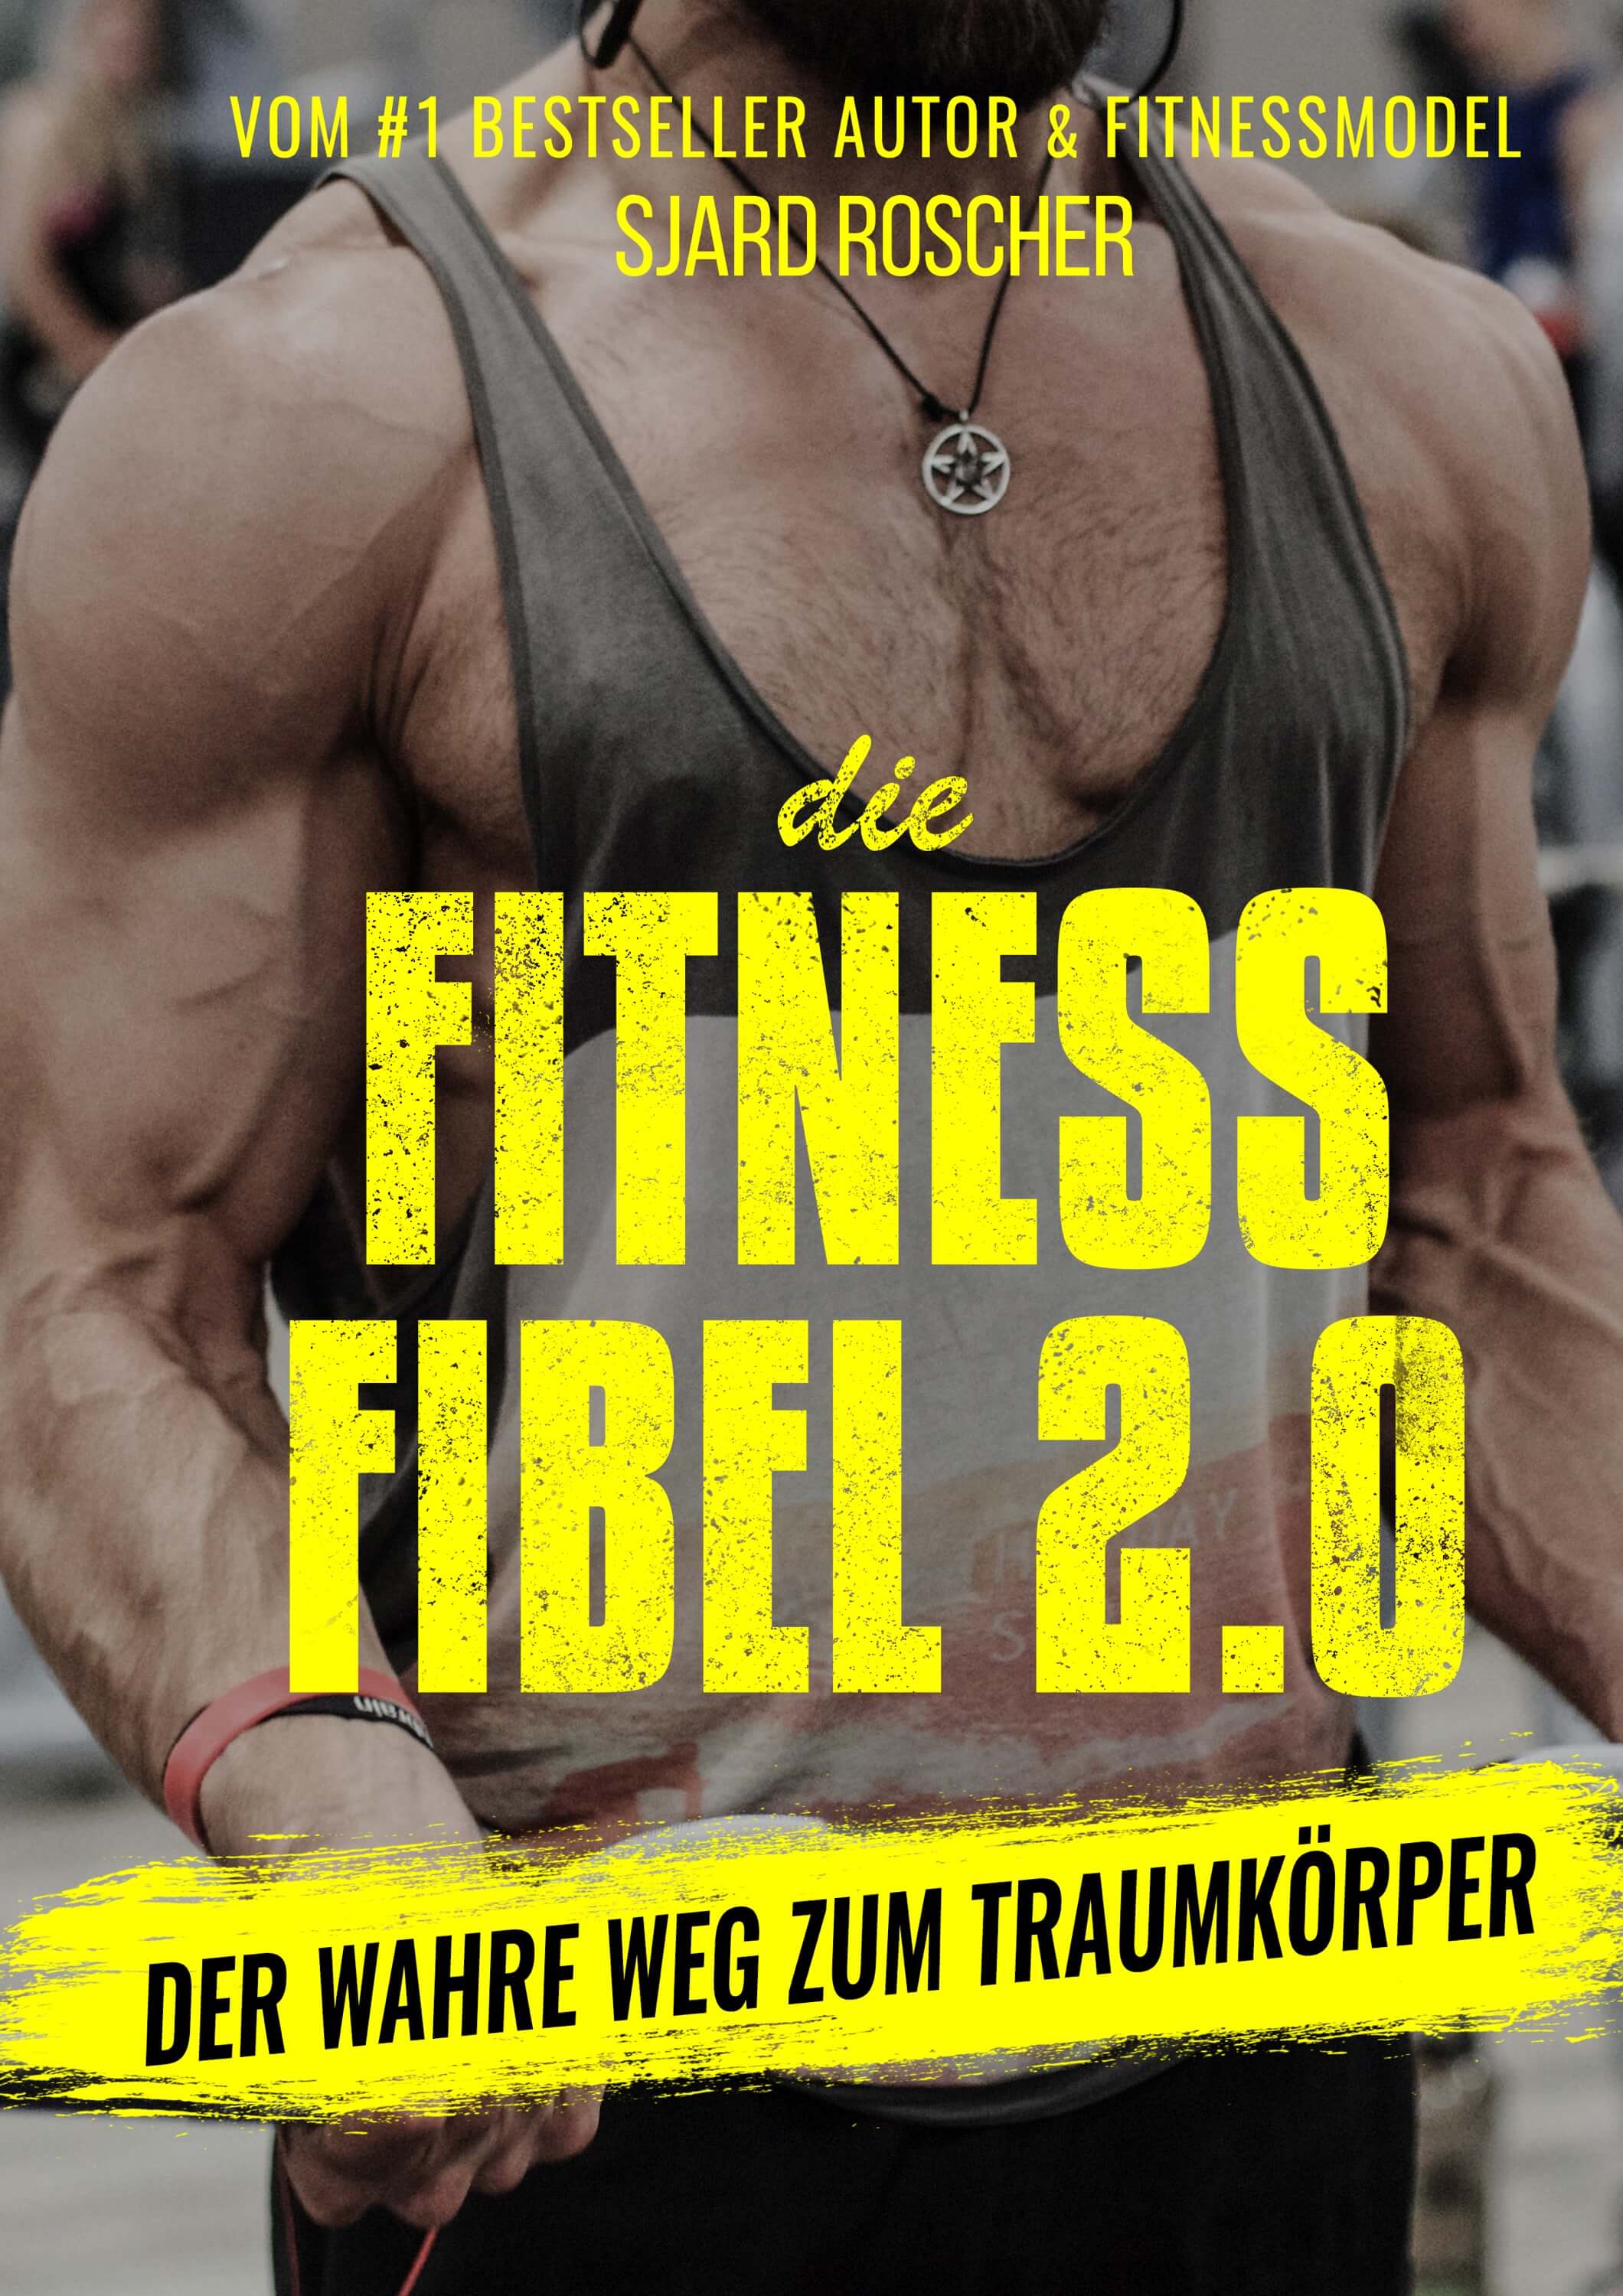 GRATIS BUCH: Fitness Fibel 2.0 (Bodybuilding, Muskelaufbau, Traumkörper)